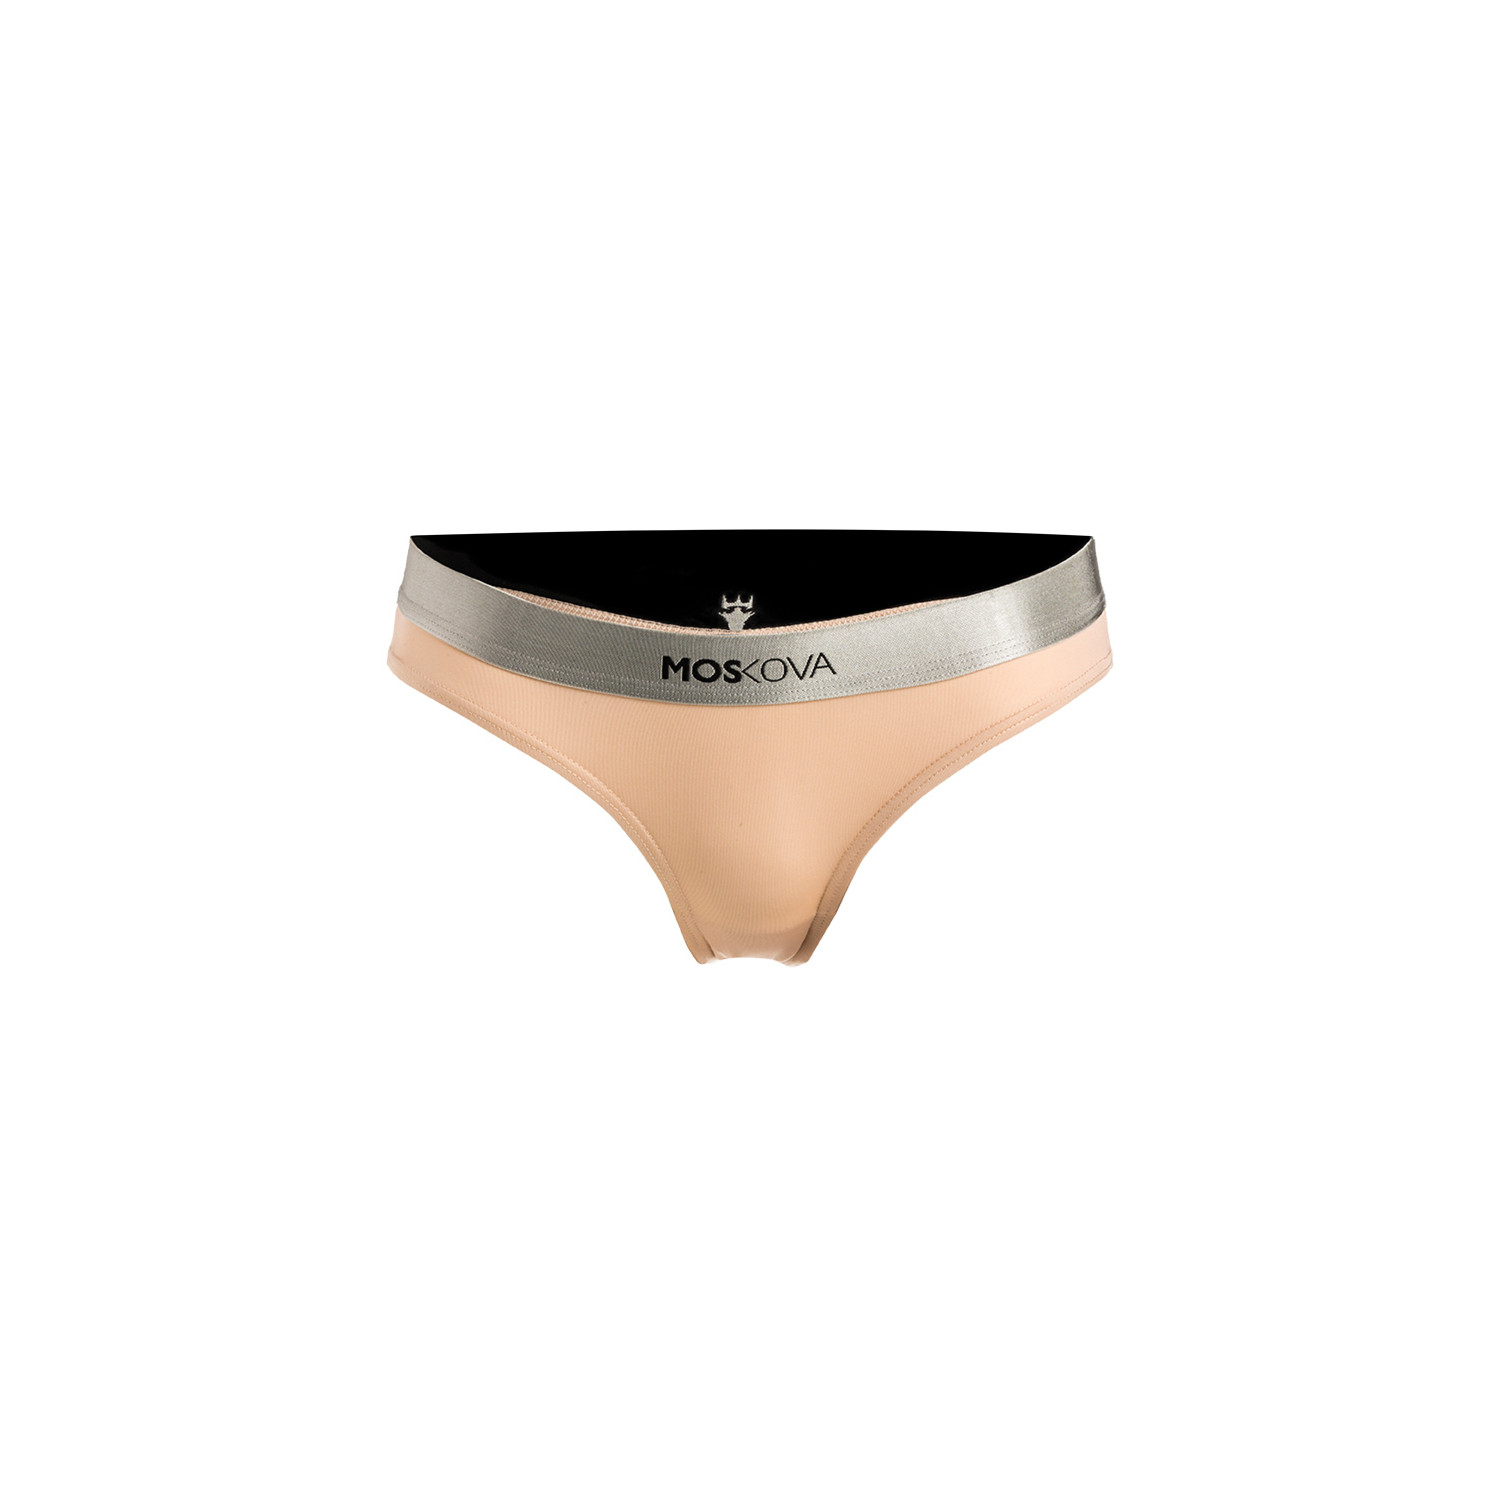 Emporio Armani Microfiber Brief, Women's Underwear Size XS